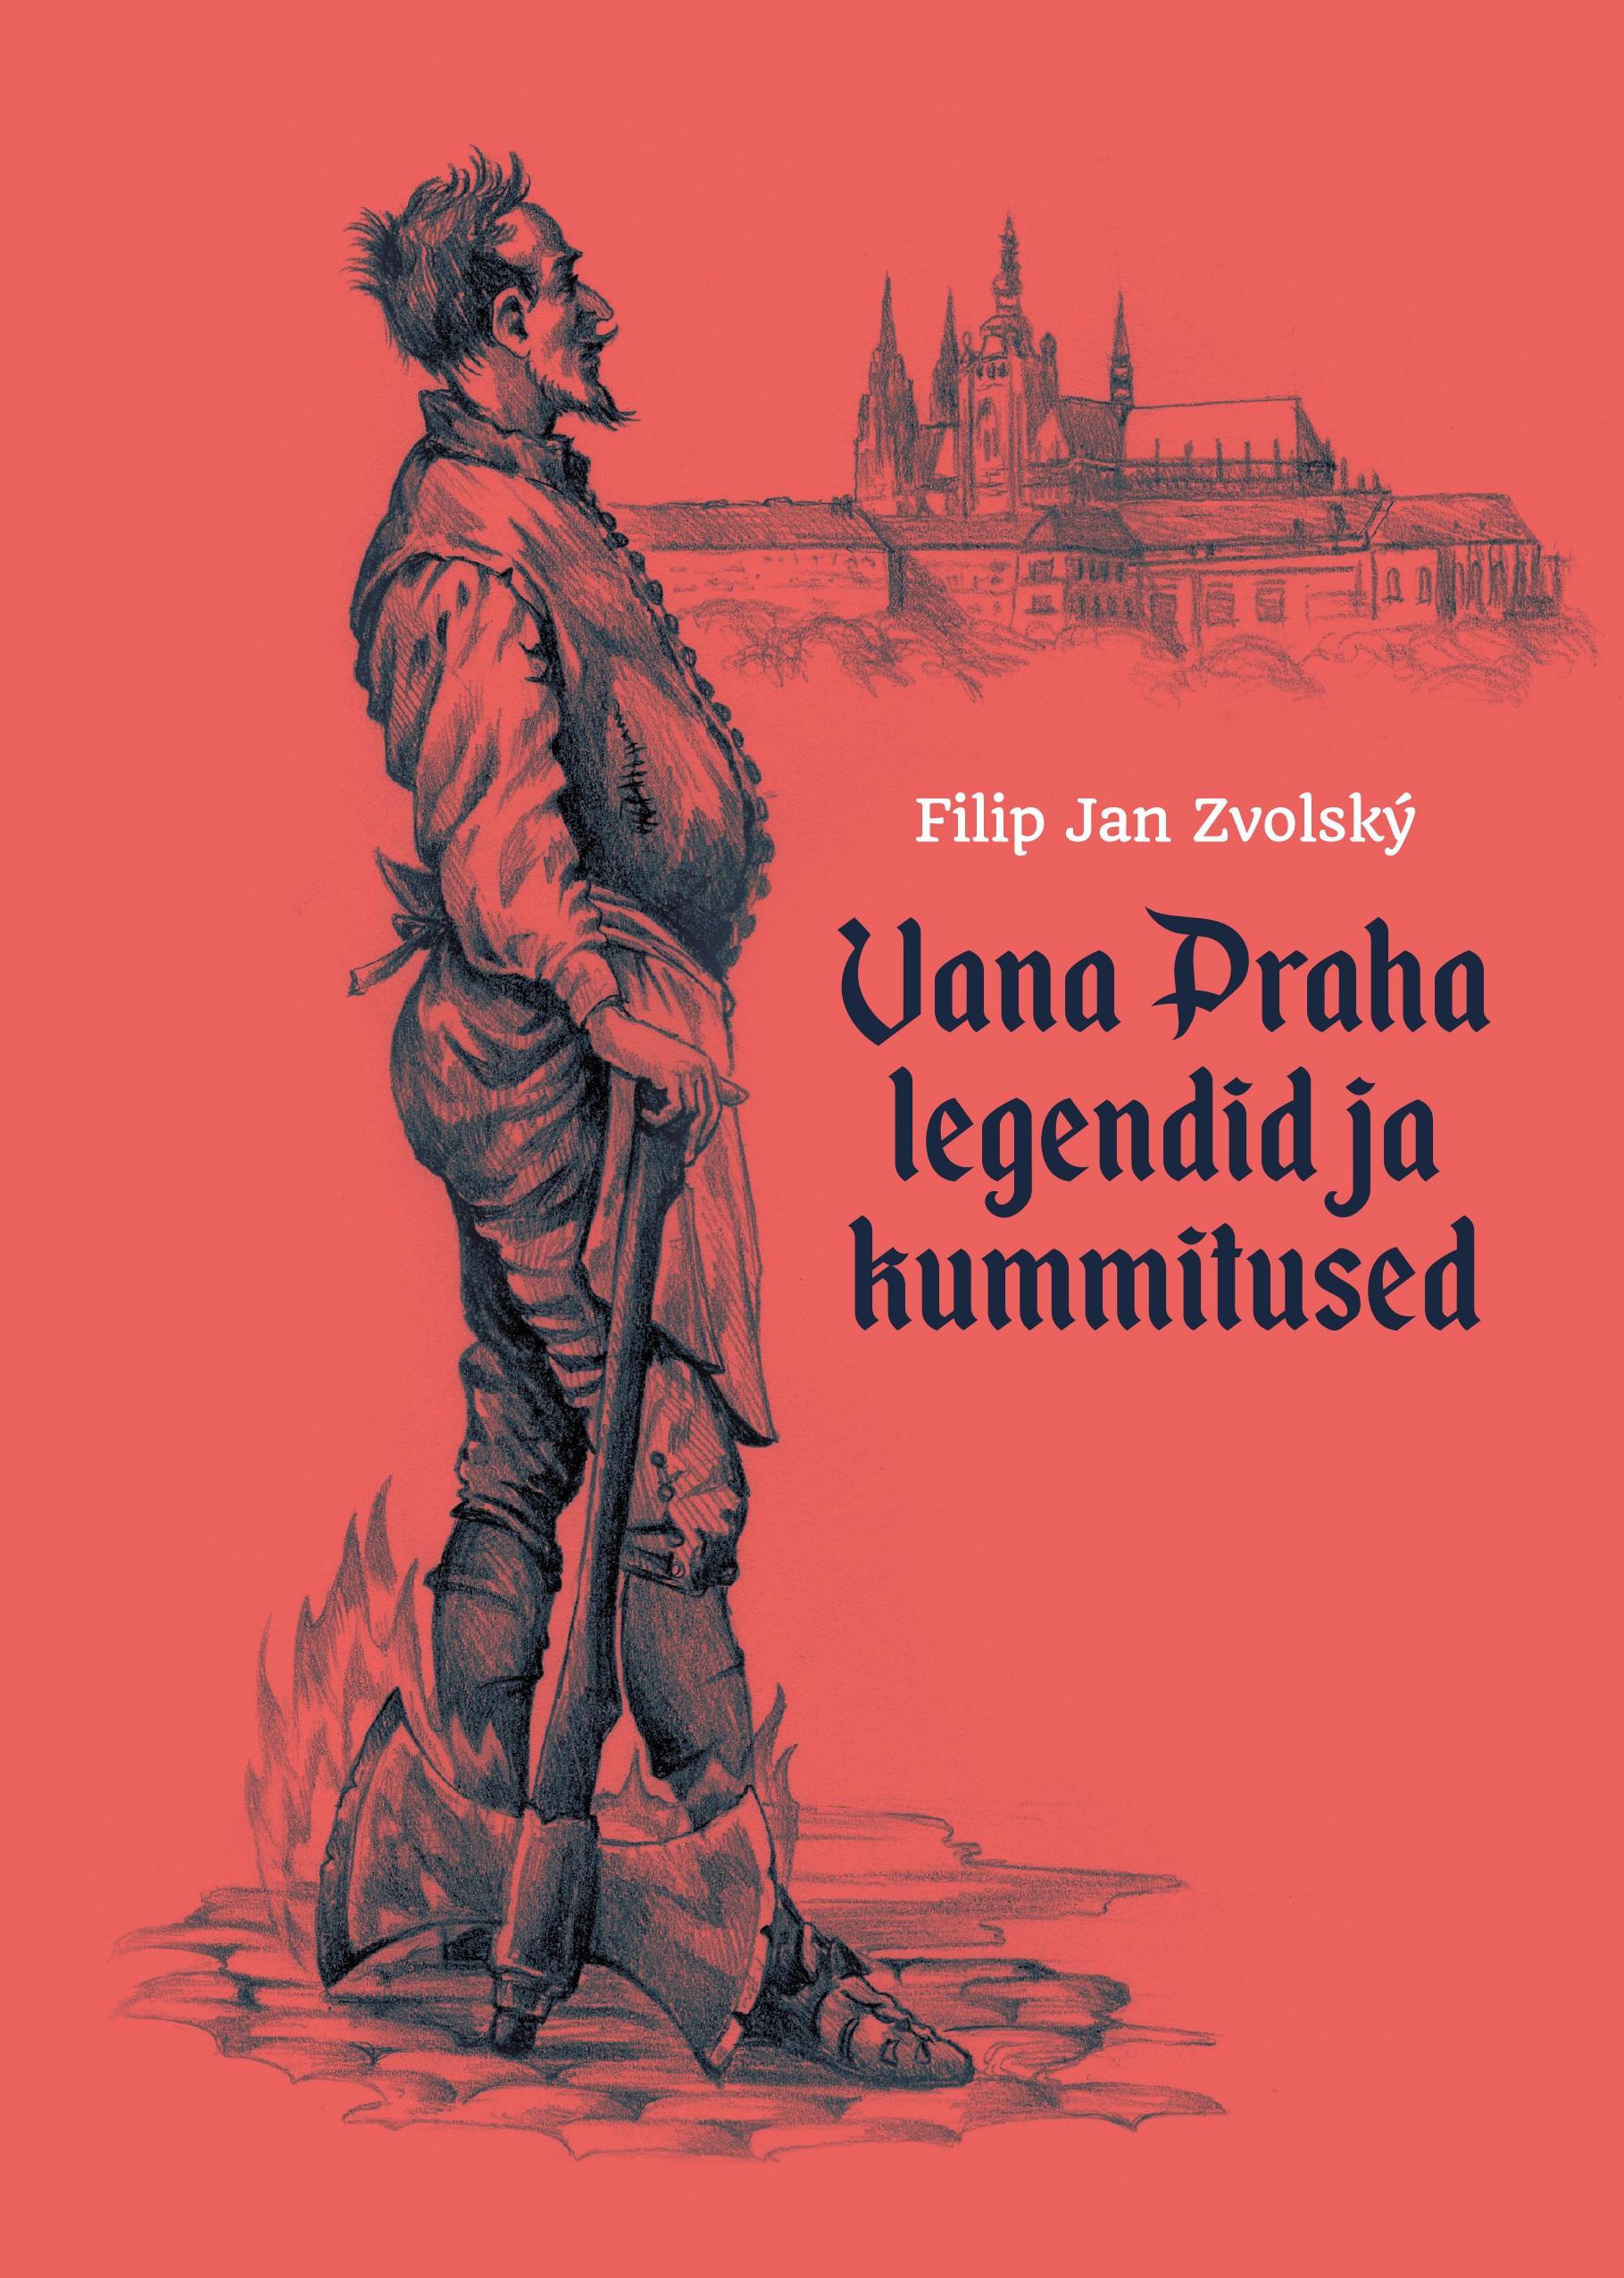 Vana Praha legendid ja kummitused